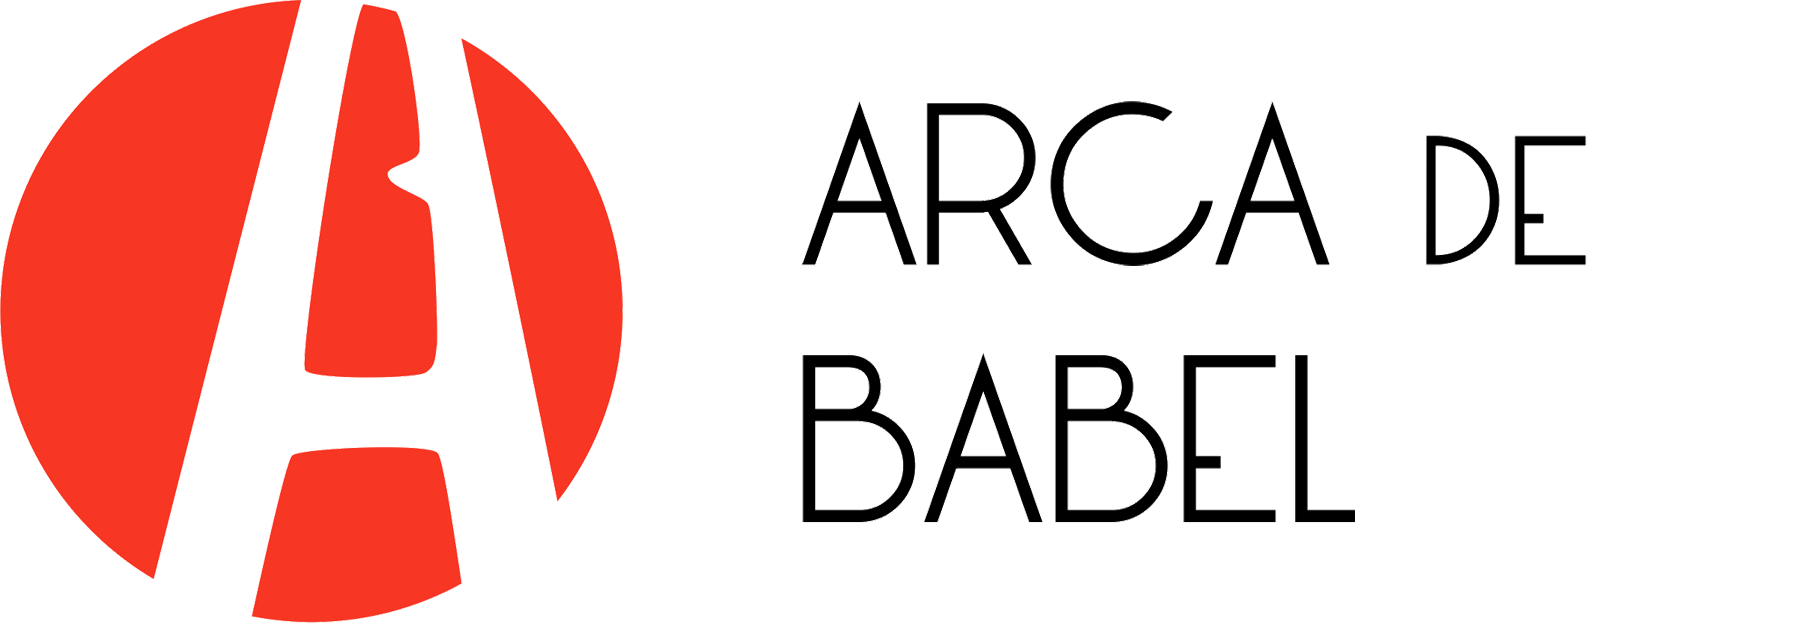 Arca de Babel convoca un concurso para emprendedores con iniciativas innovadoras